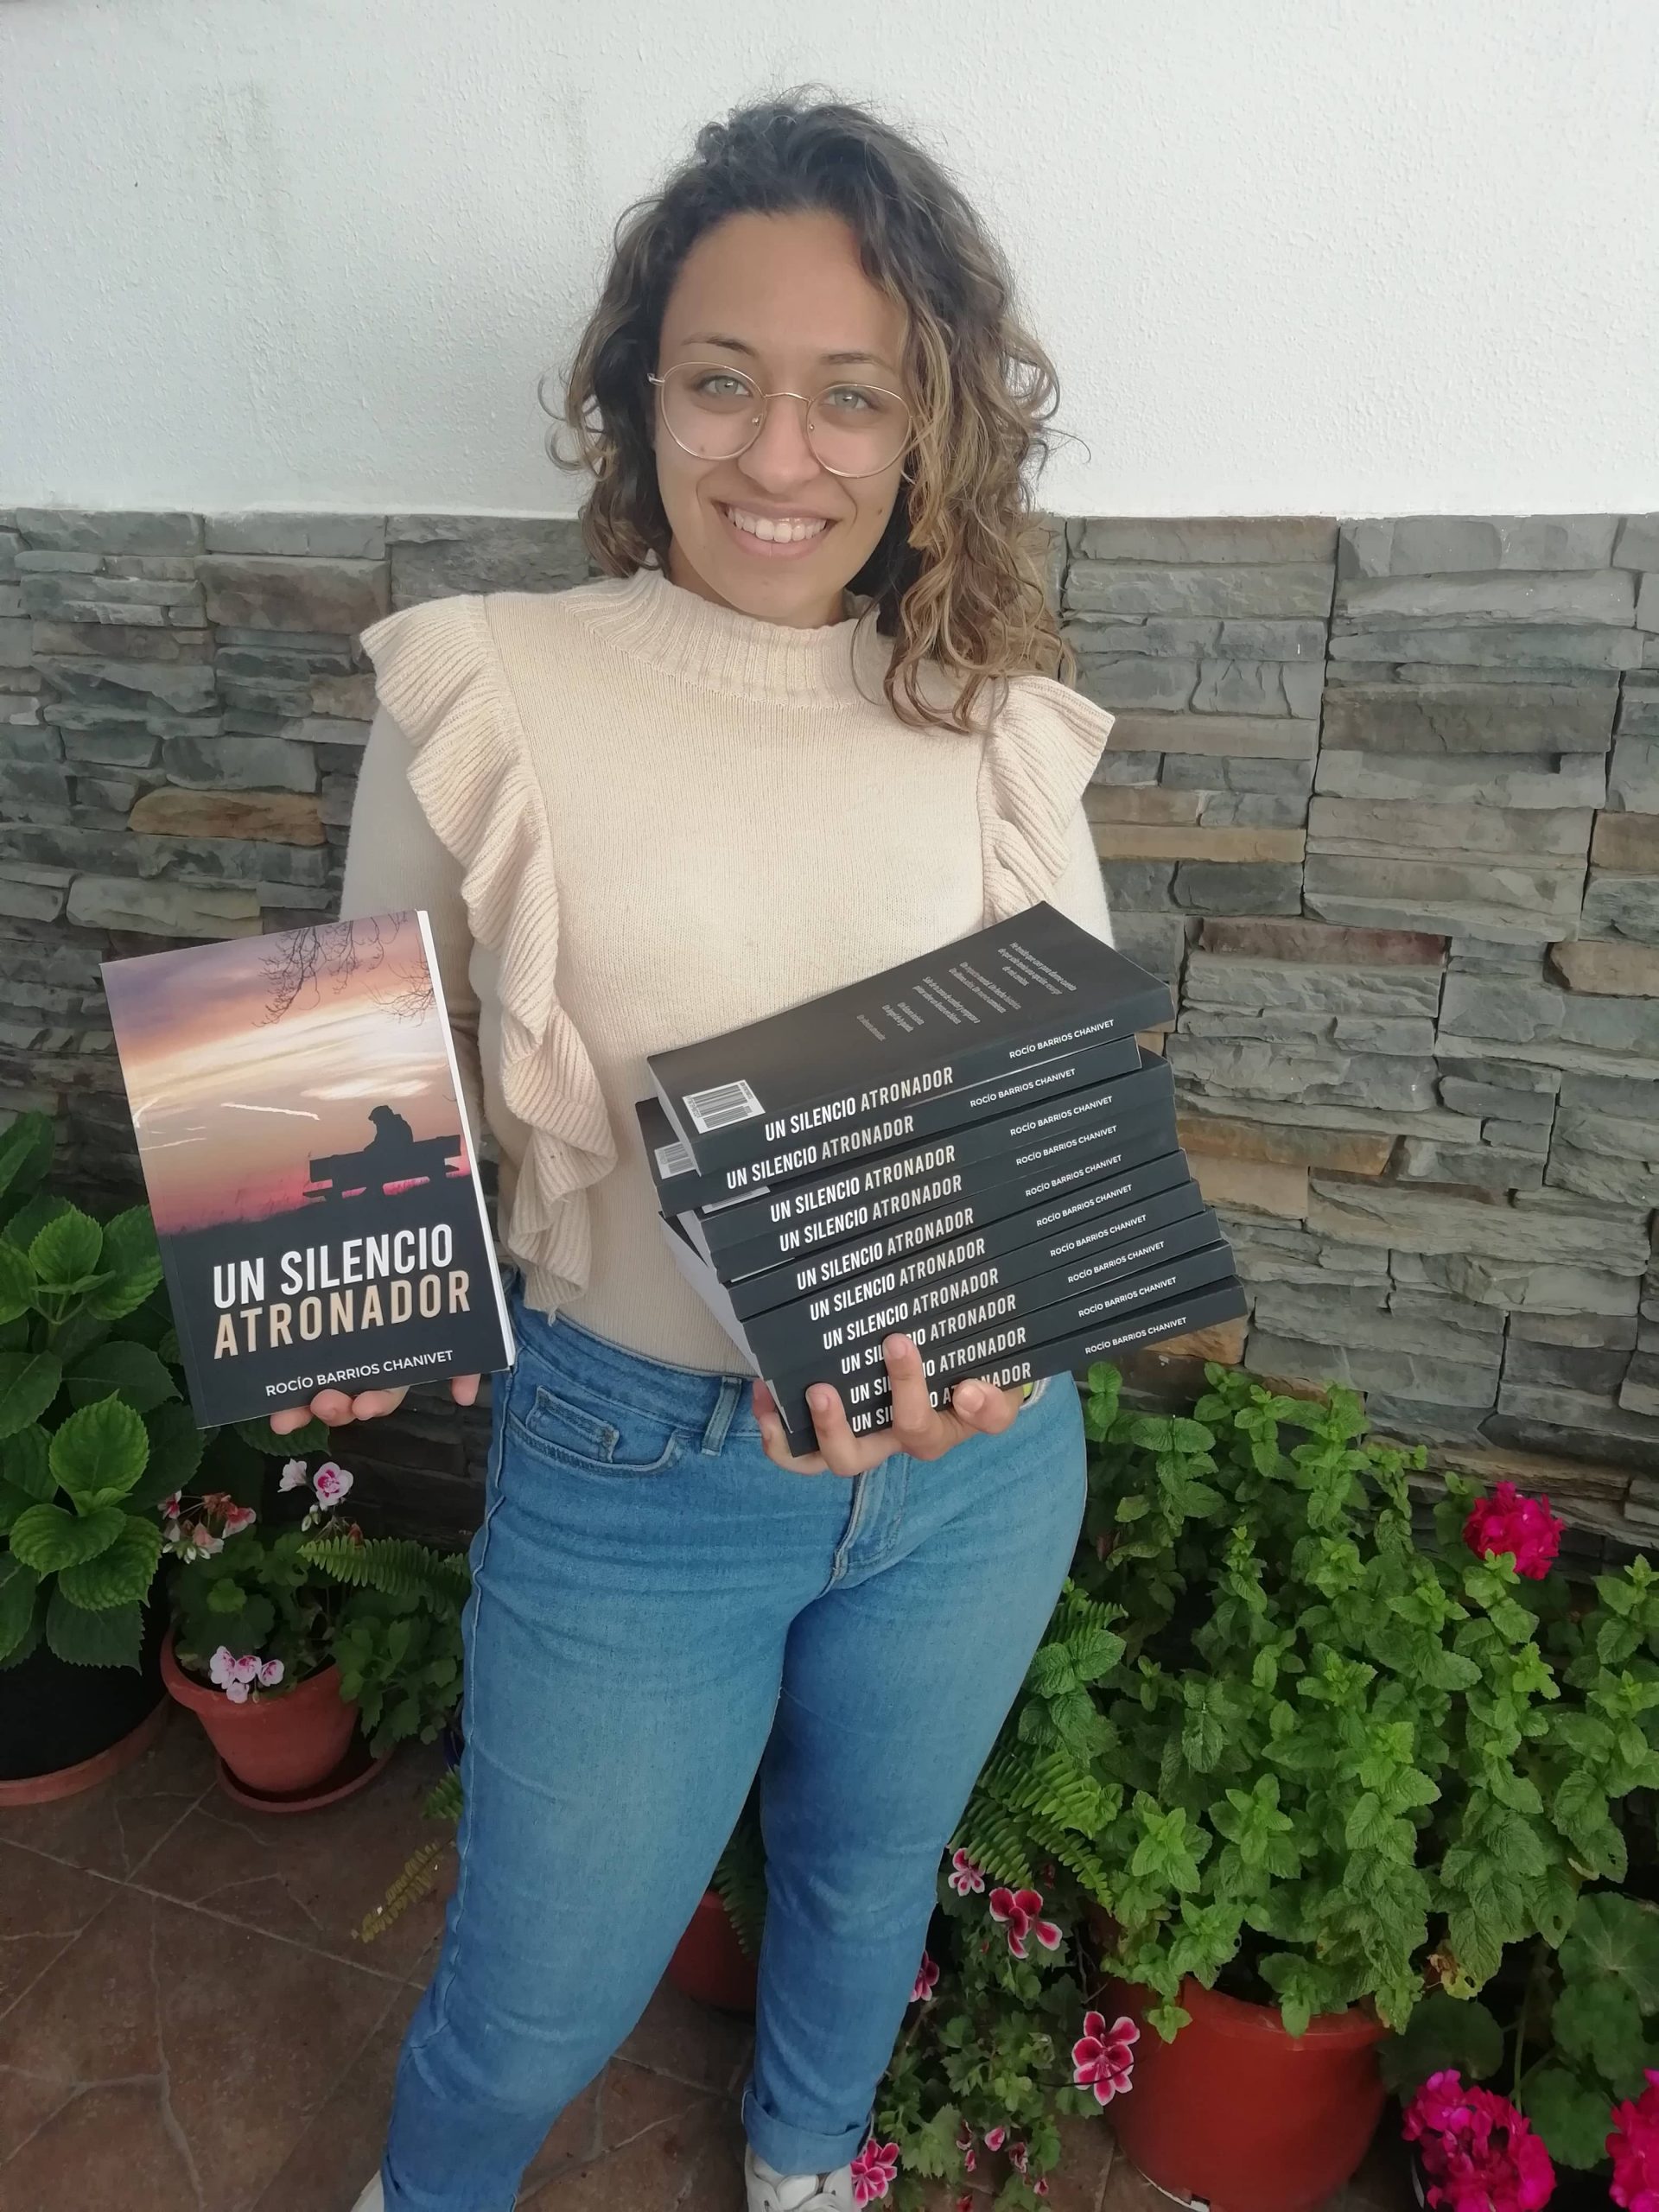 La joven y prometedora escritora gaditana Rocío Barrios presenta: “Un silencio atronador”